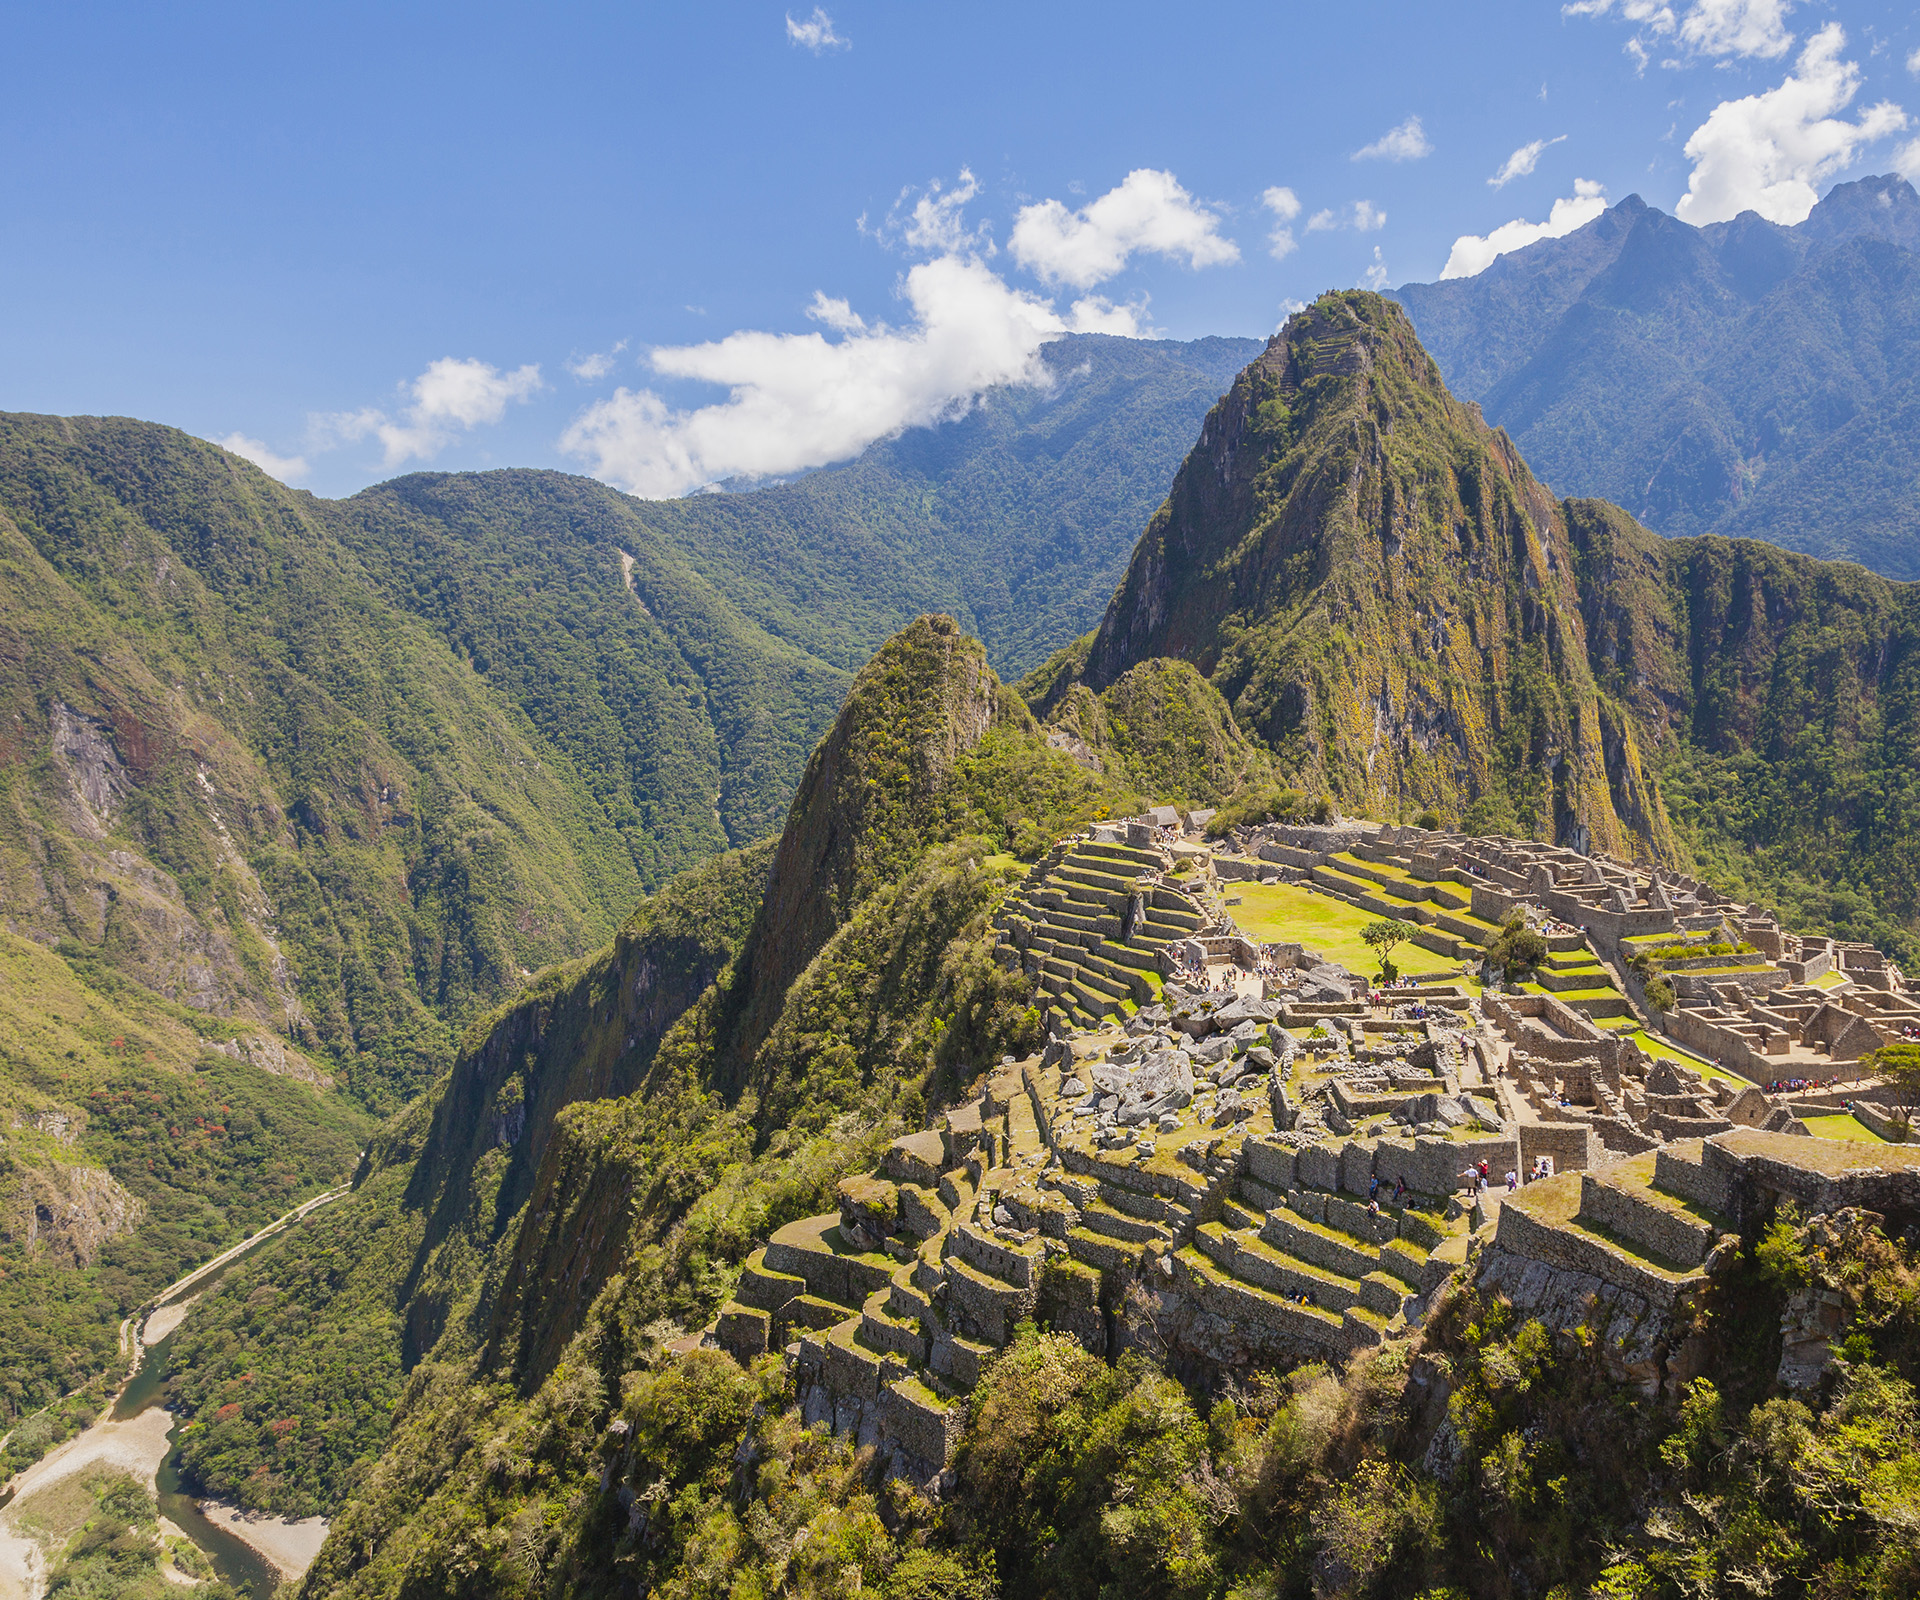 The magic of Machu Picchu